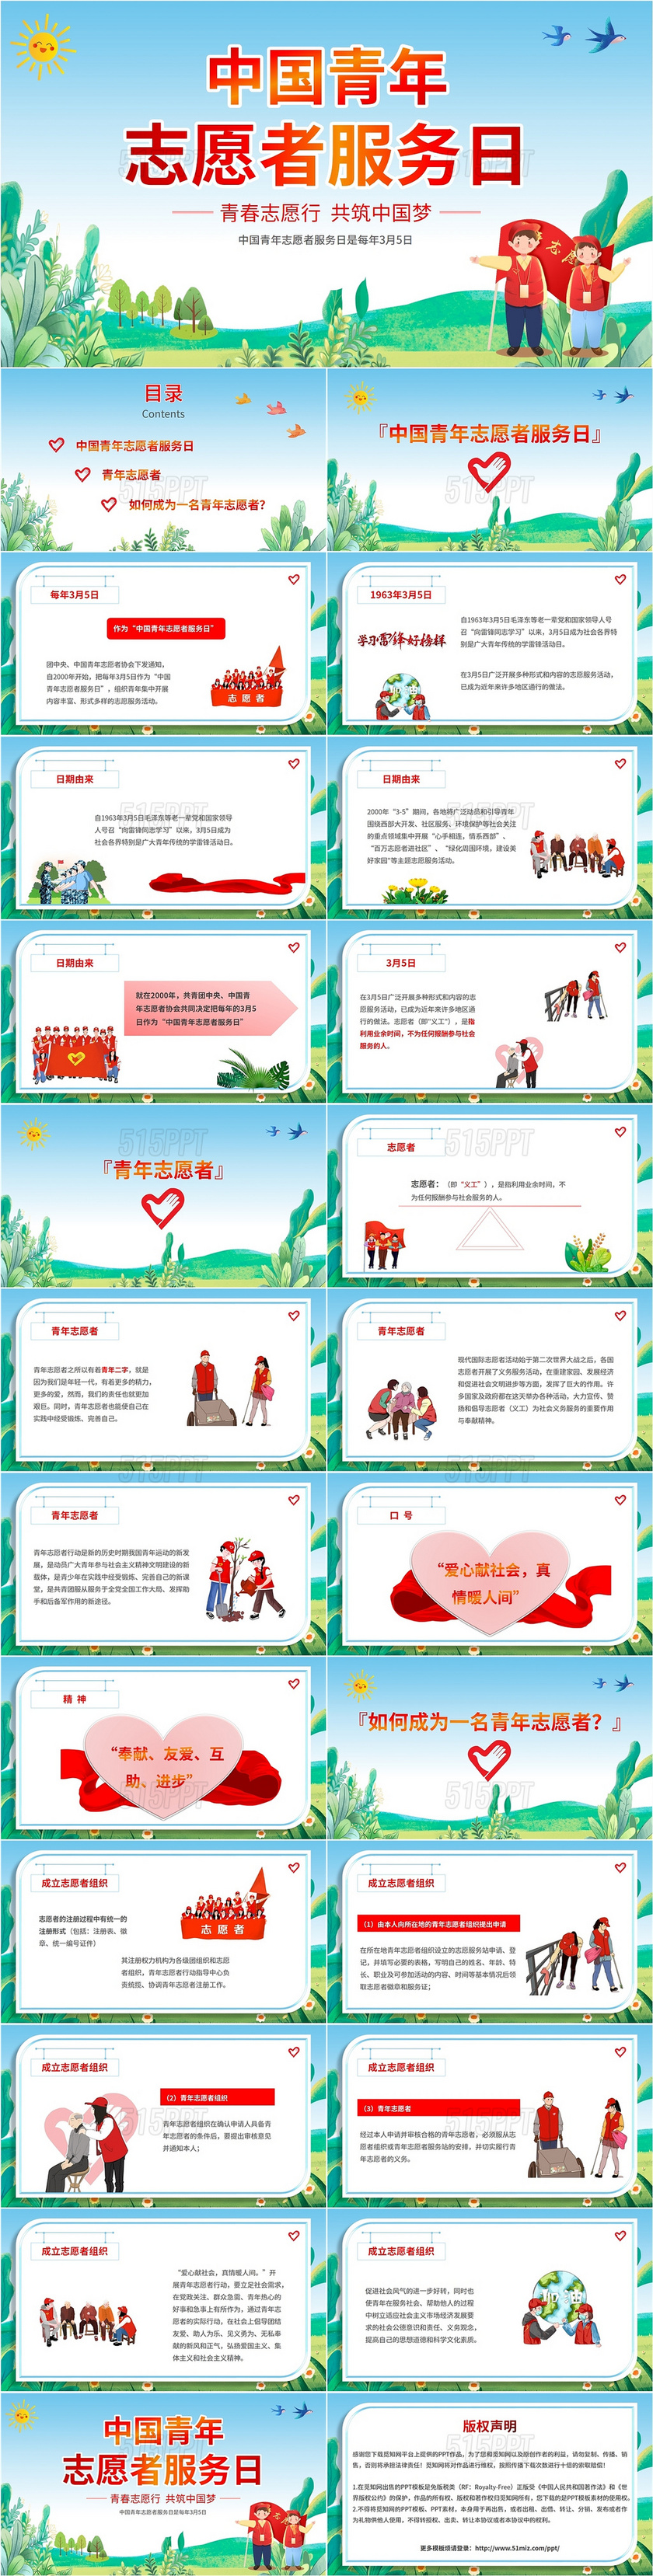 2022年简约小清新中国青年志愿者服务日展示培训活动汇报模板